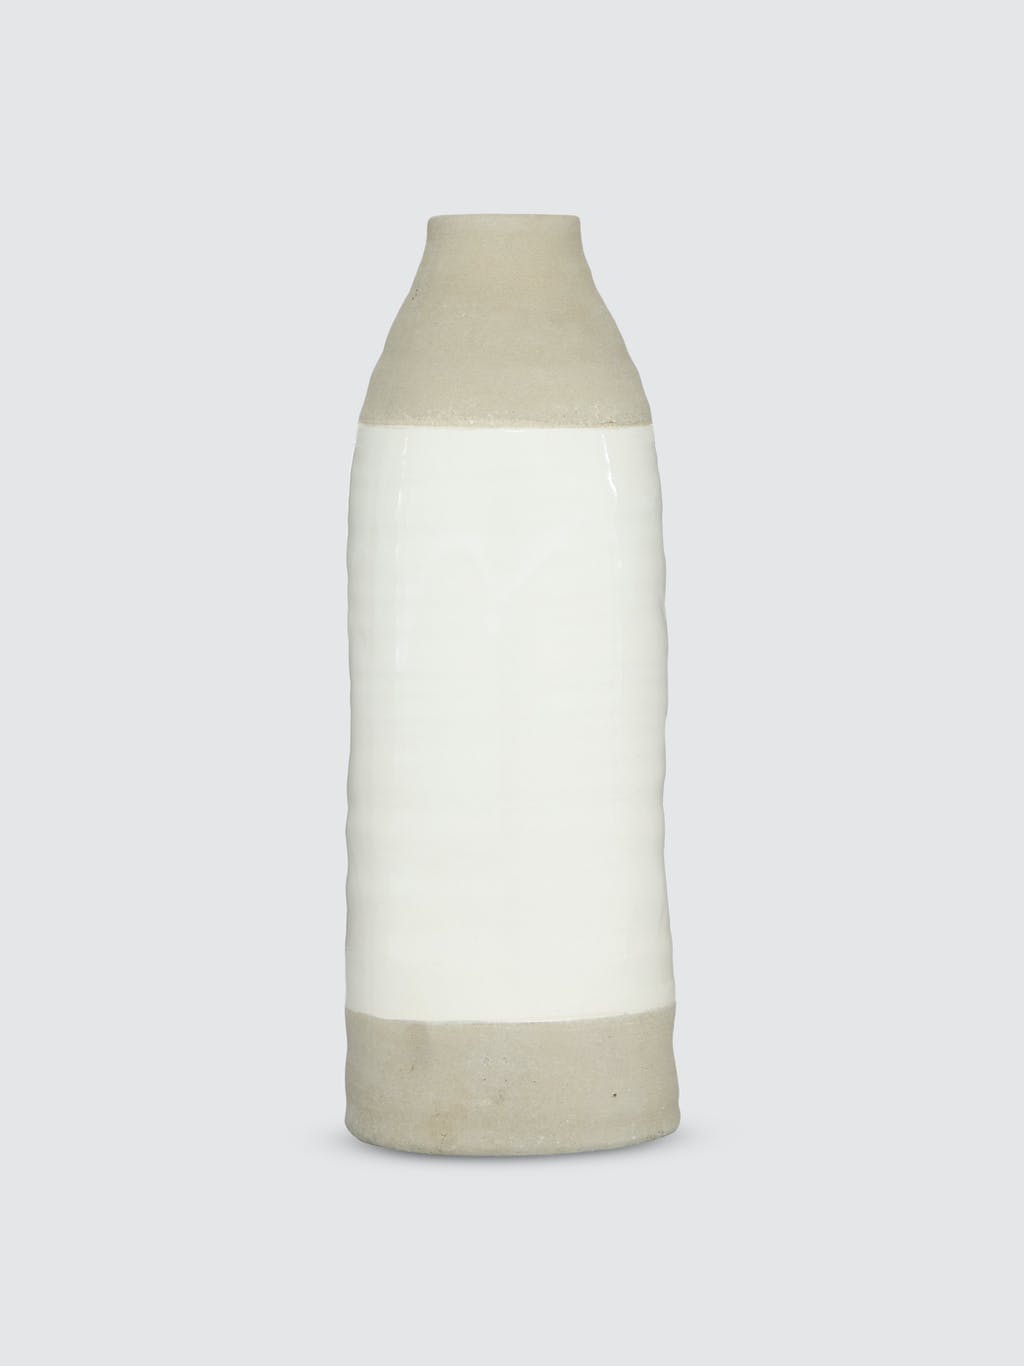 Bottle-Shaped Ceramic Vase